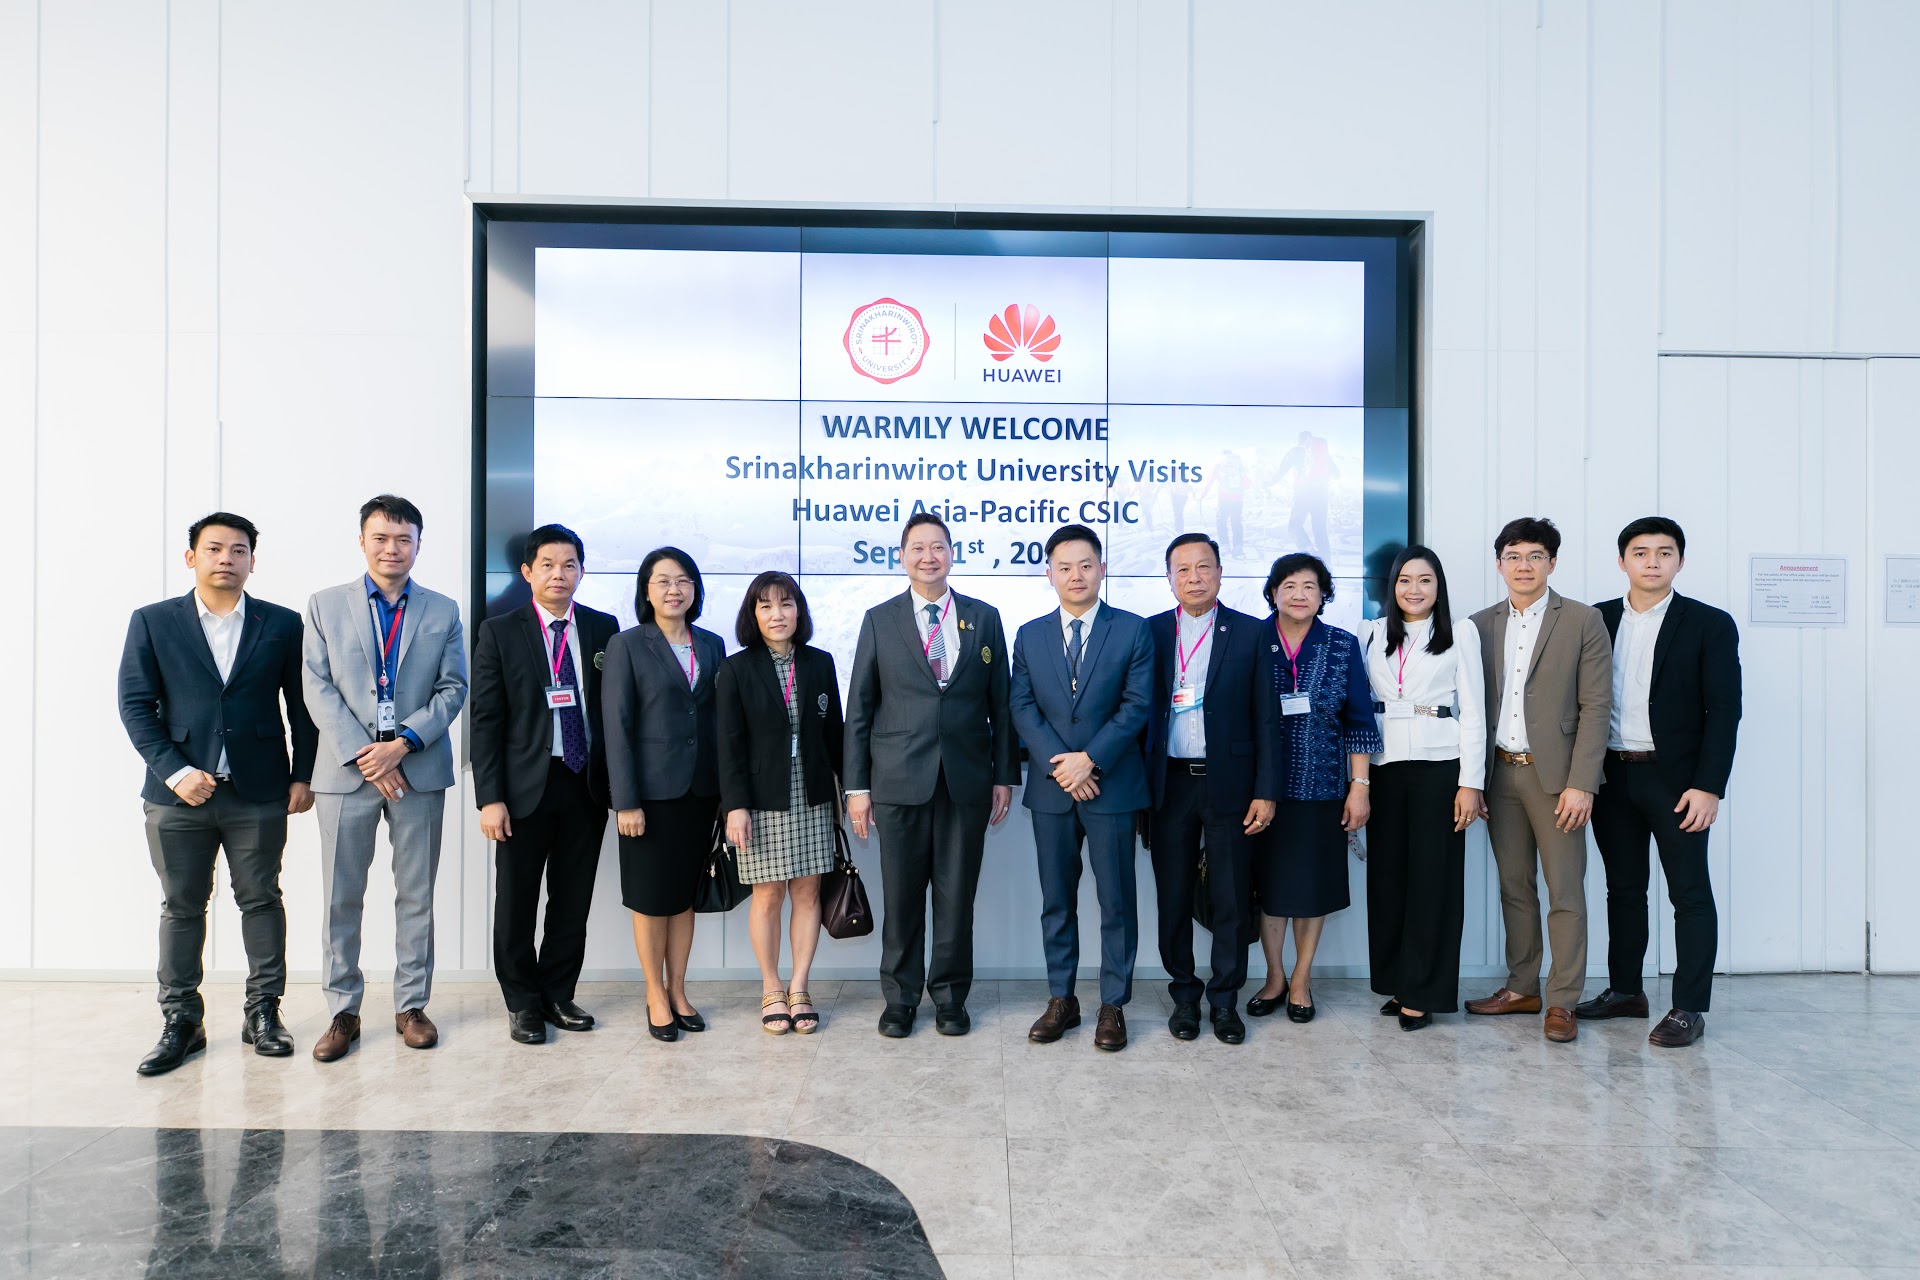 คณะผู้บริหาร มศว เยี่ยมชมศูนย์นวัตกรรมการเรียนรู้ Huawei Asia Pacific CSIC  โดยบริษัท หัวเว่ย เทคโนโลยี่ ประเทศไทย